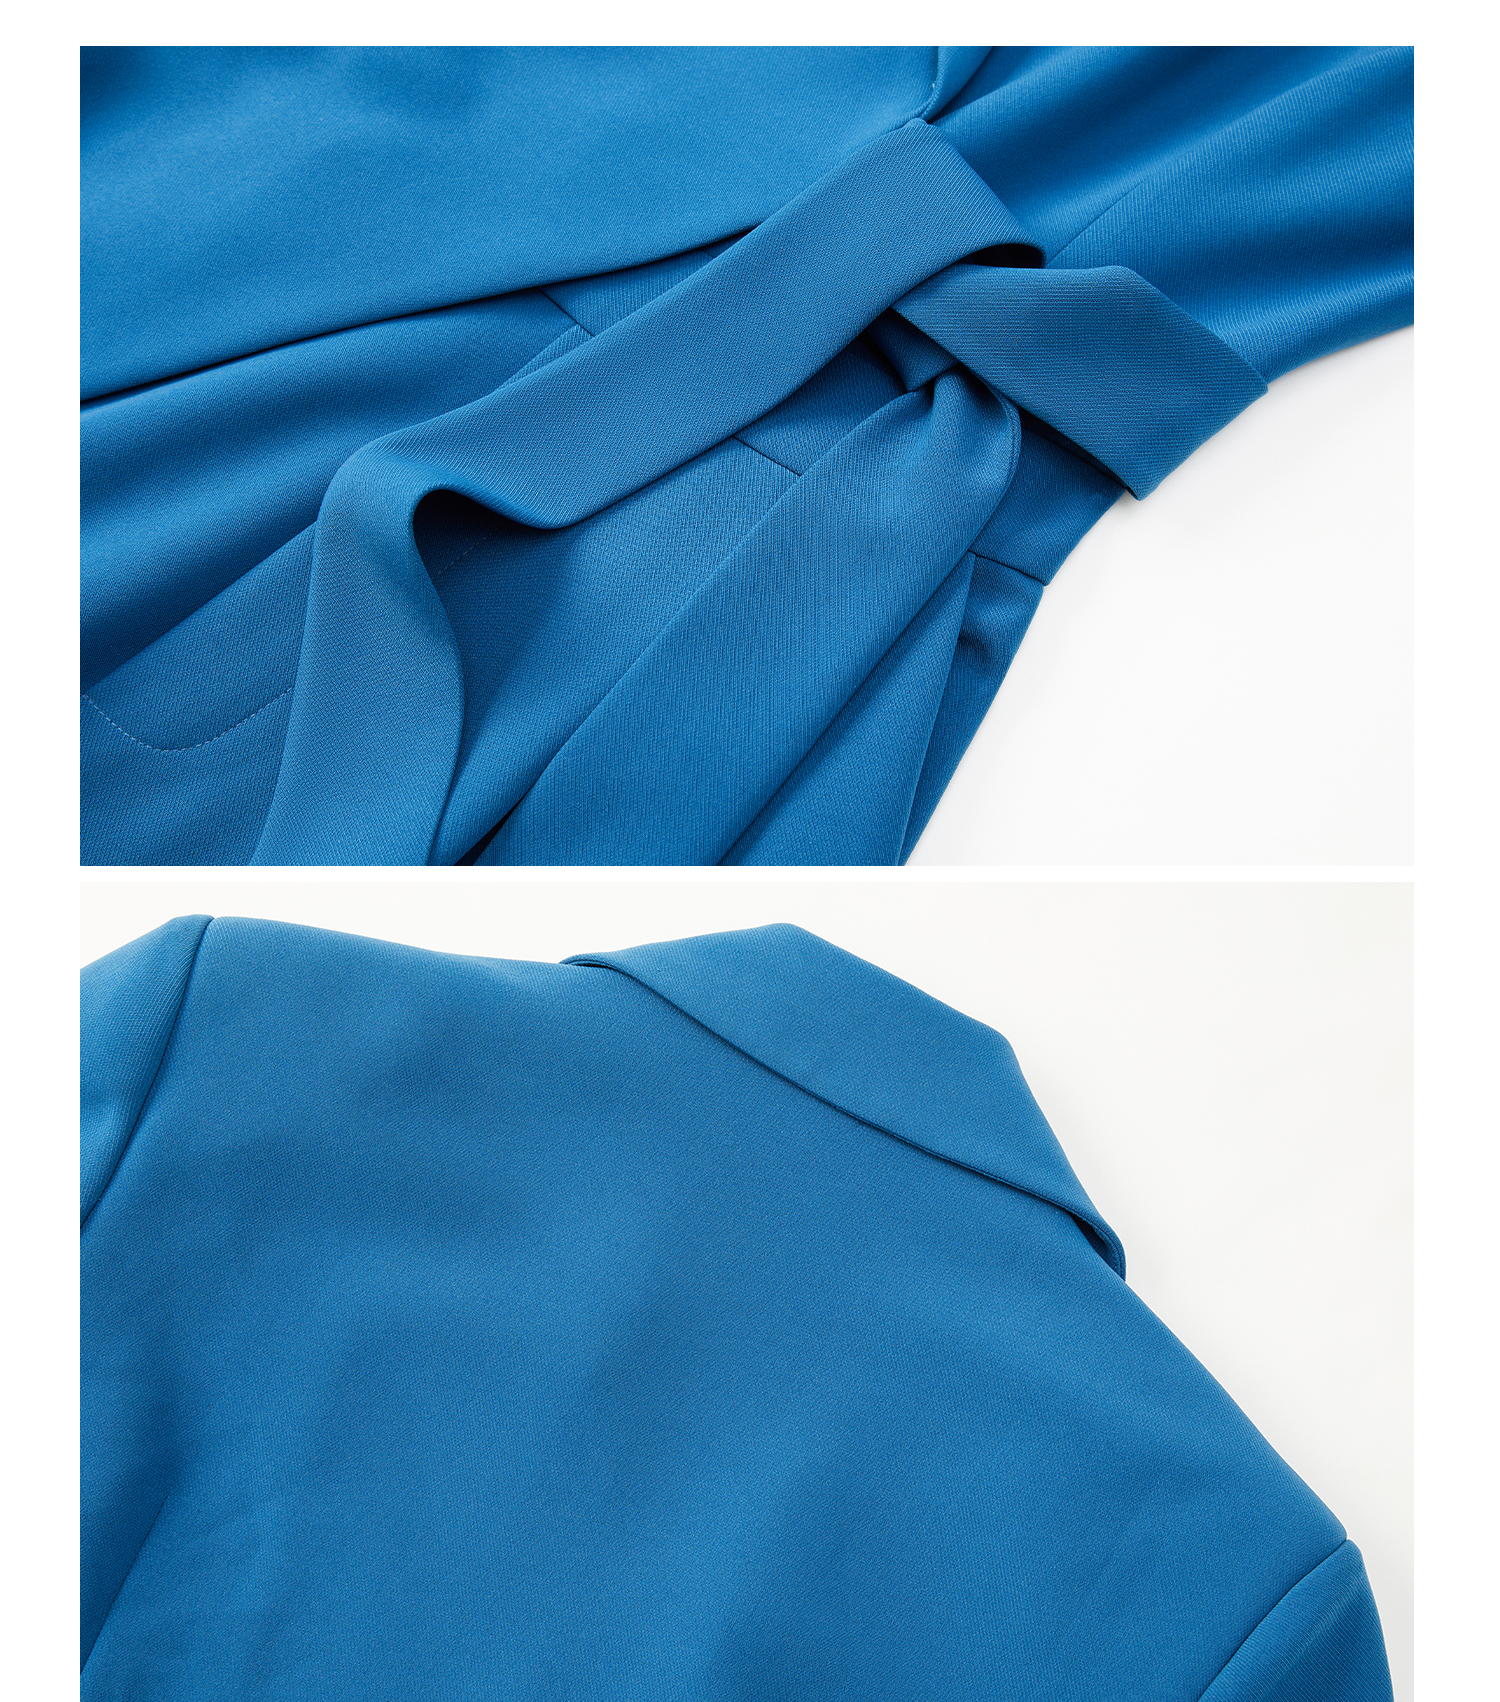 Proizvođač odijela (3)